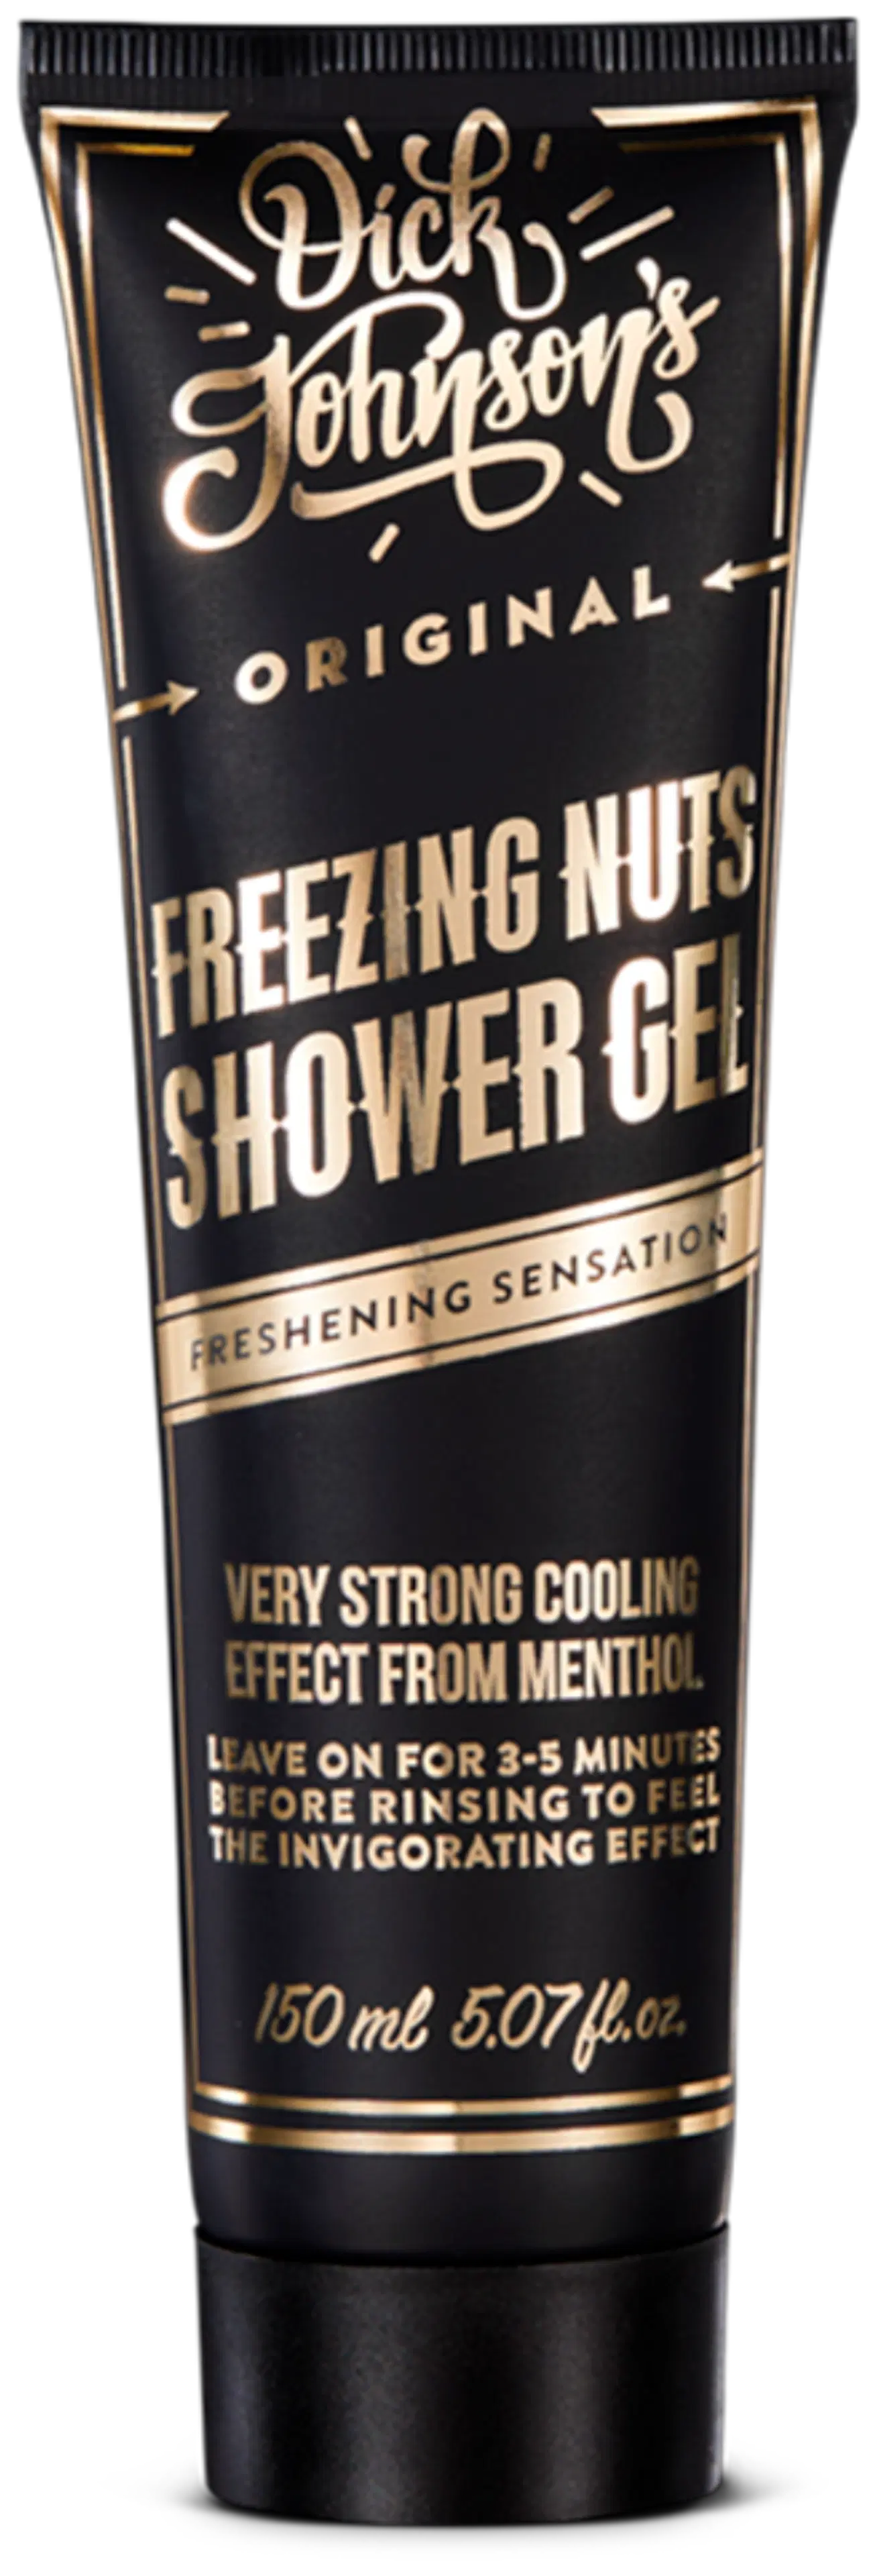 Dick Johnson Freezing Nuts Shower Gel suihkugeeli 150 ml